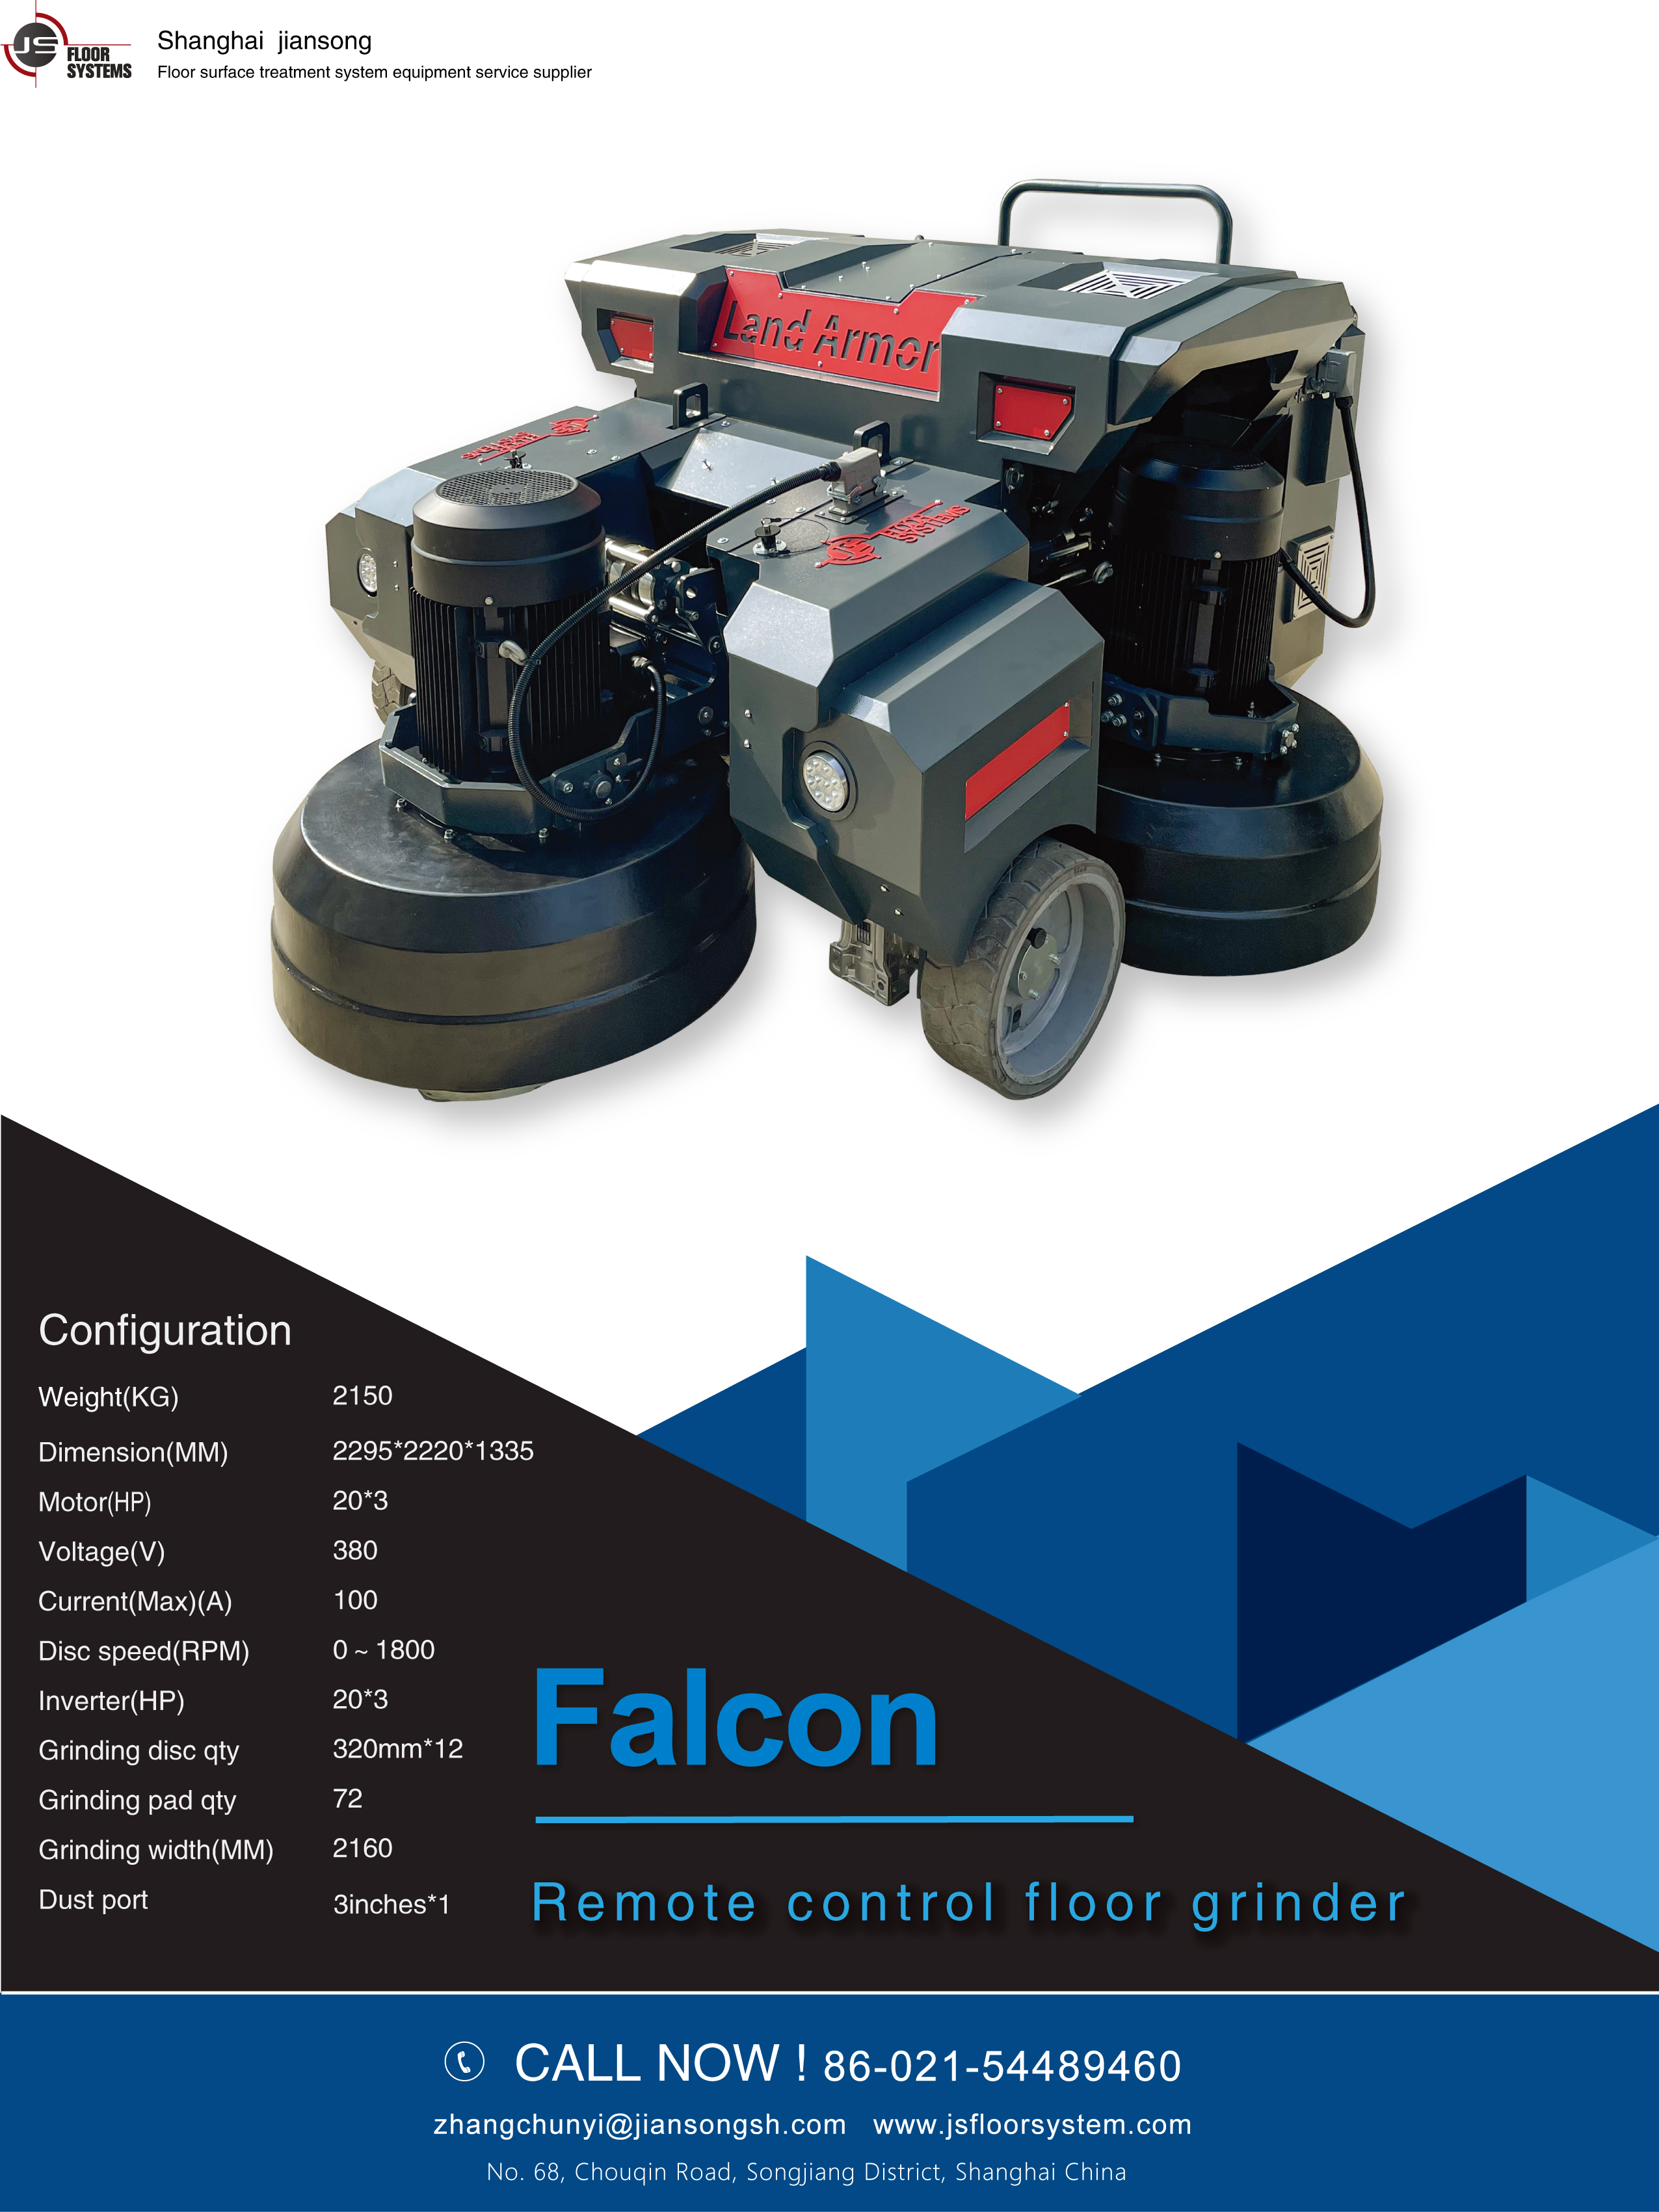 Falcon floor grinder